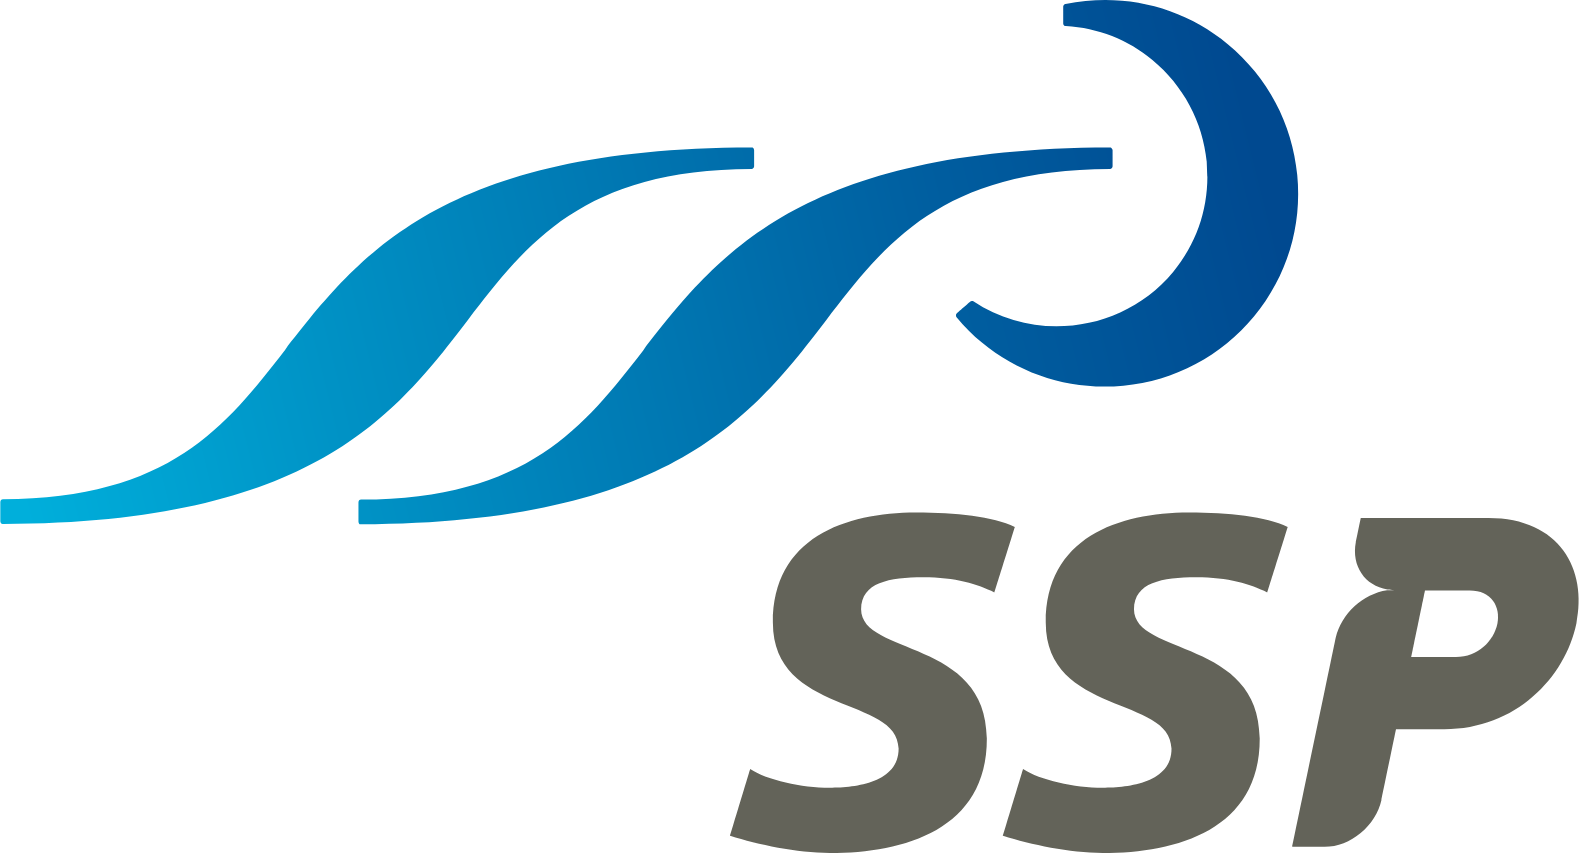 SSP Group logo large (transparent PNG)